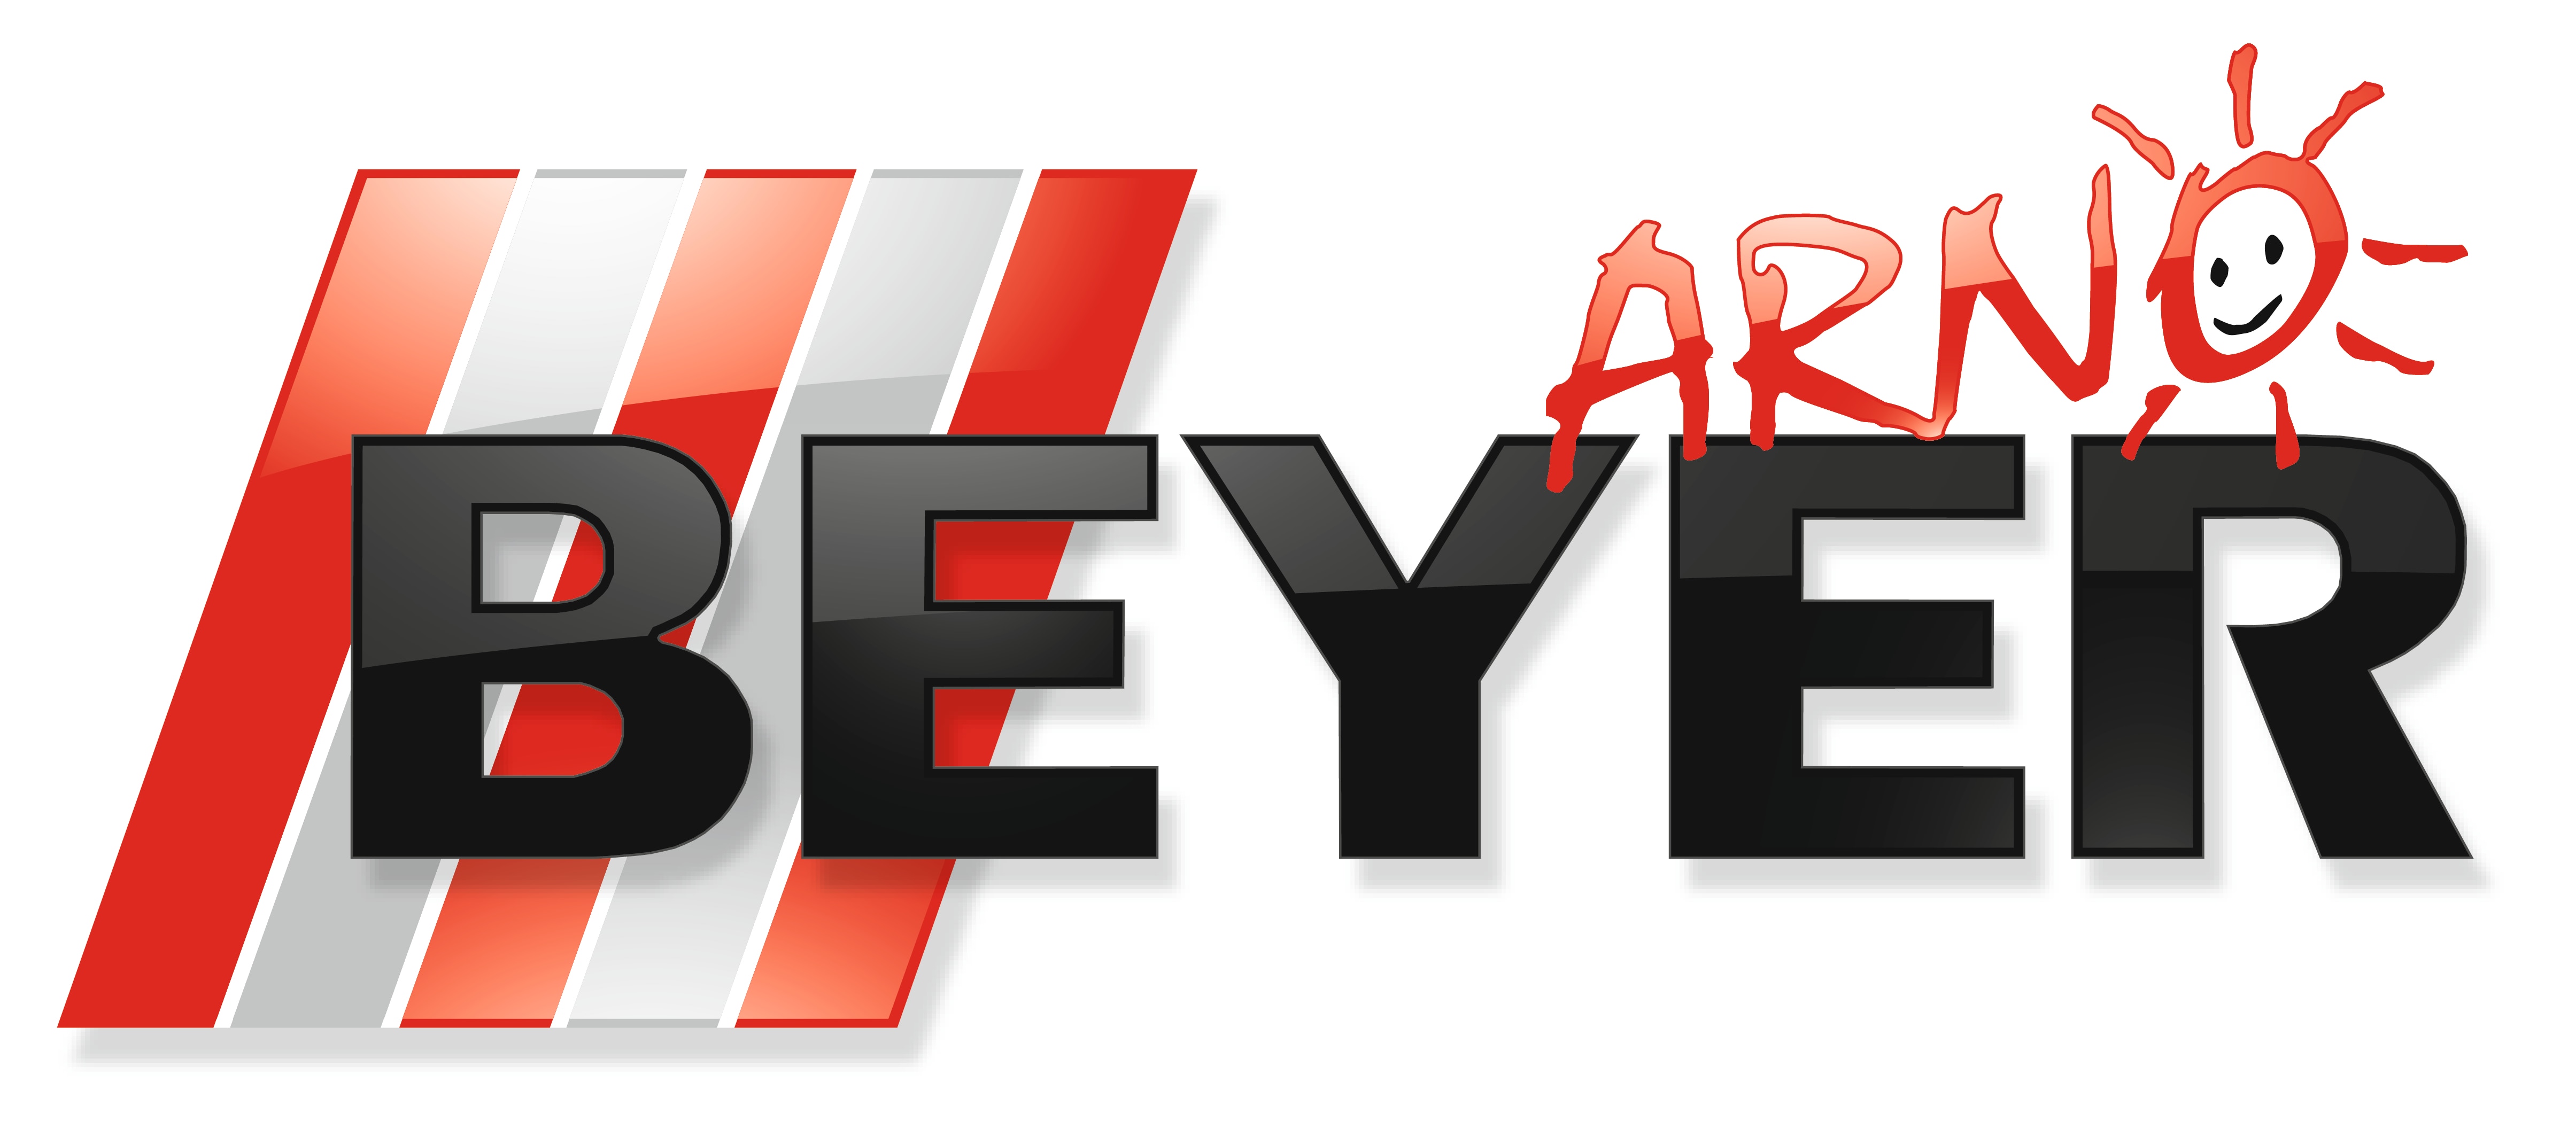 Beyer_Logo_V3_(JPG).jpg